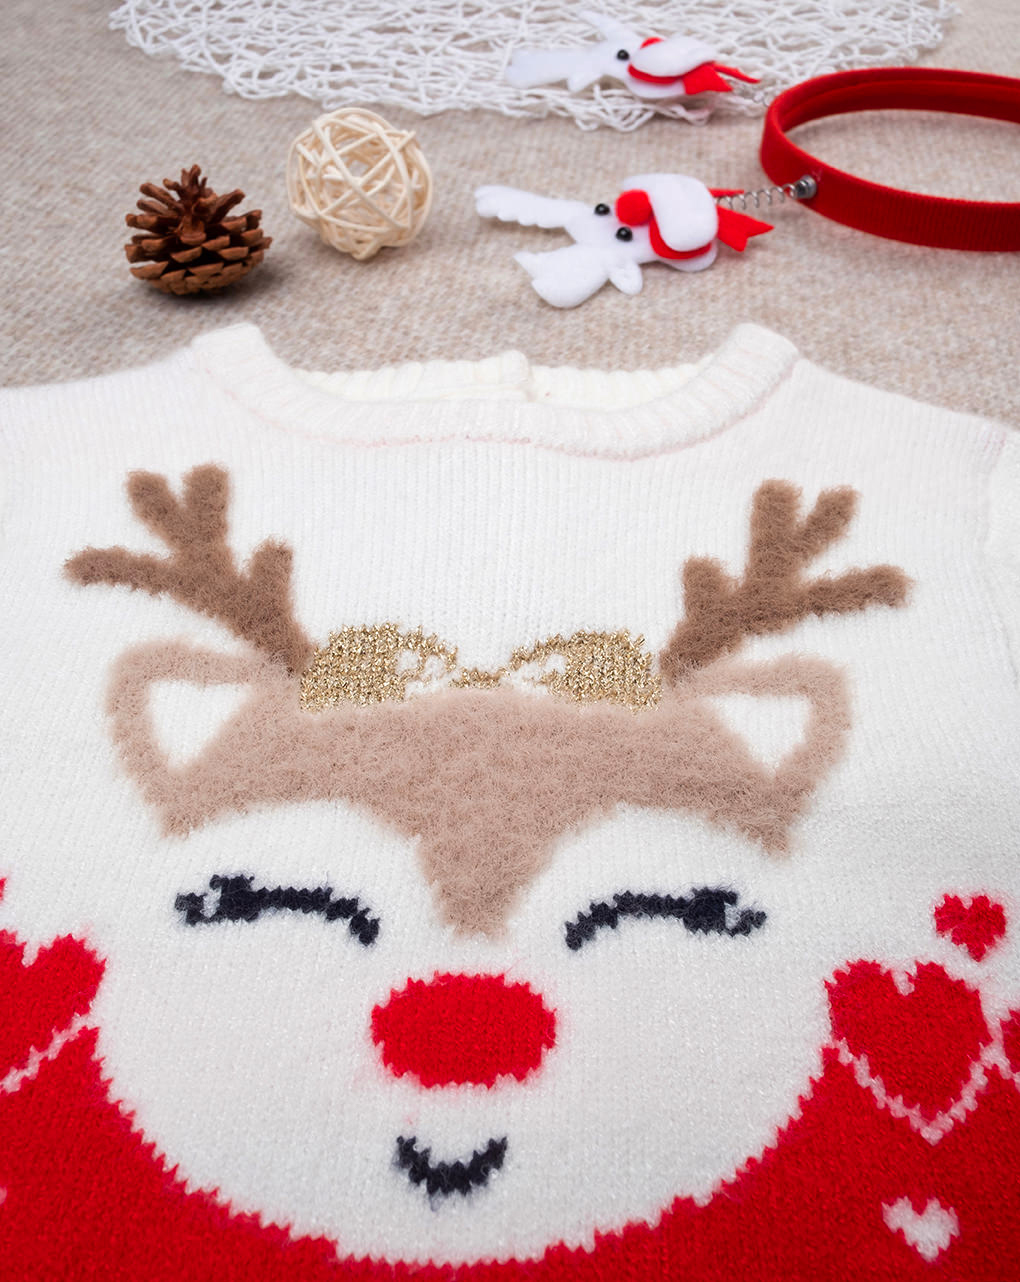 χριστουγεννιάτικο βρεφικό πουλόβερ με τάρανδο για κορίτσι - Prénatal